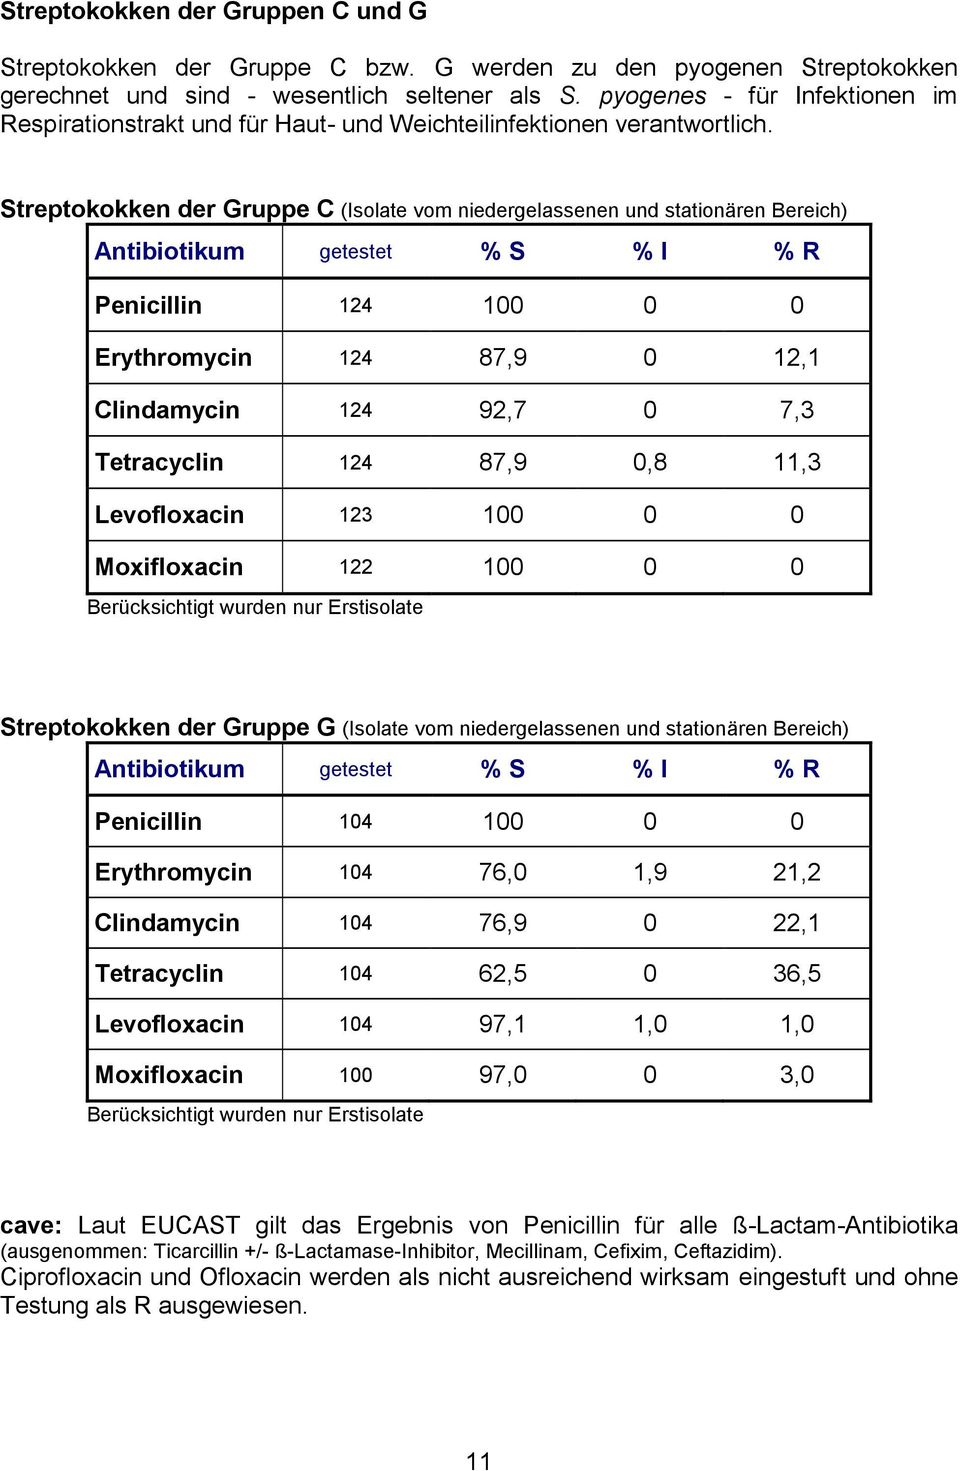 Streptokokken der Gruppe C (Isolate vom niedergelassenen und stationären Bereich) Antibiotikum getestet % S % I % R Penicillin 124 100 0 0 Erythromycin 124 87,9 0 12,1 Clindamycin 124 92,7 0 7,3